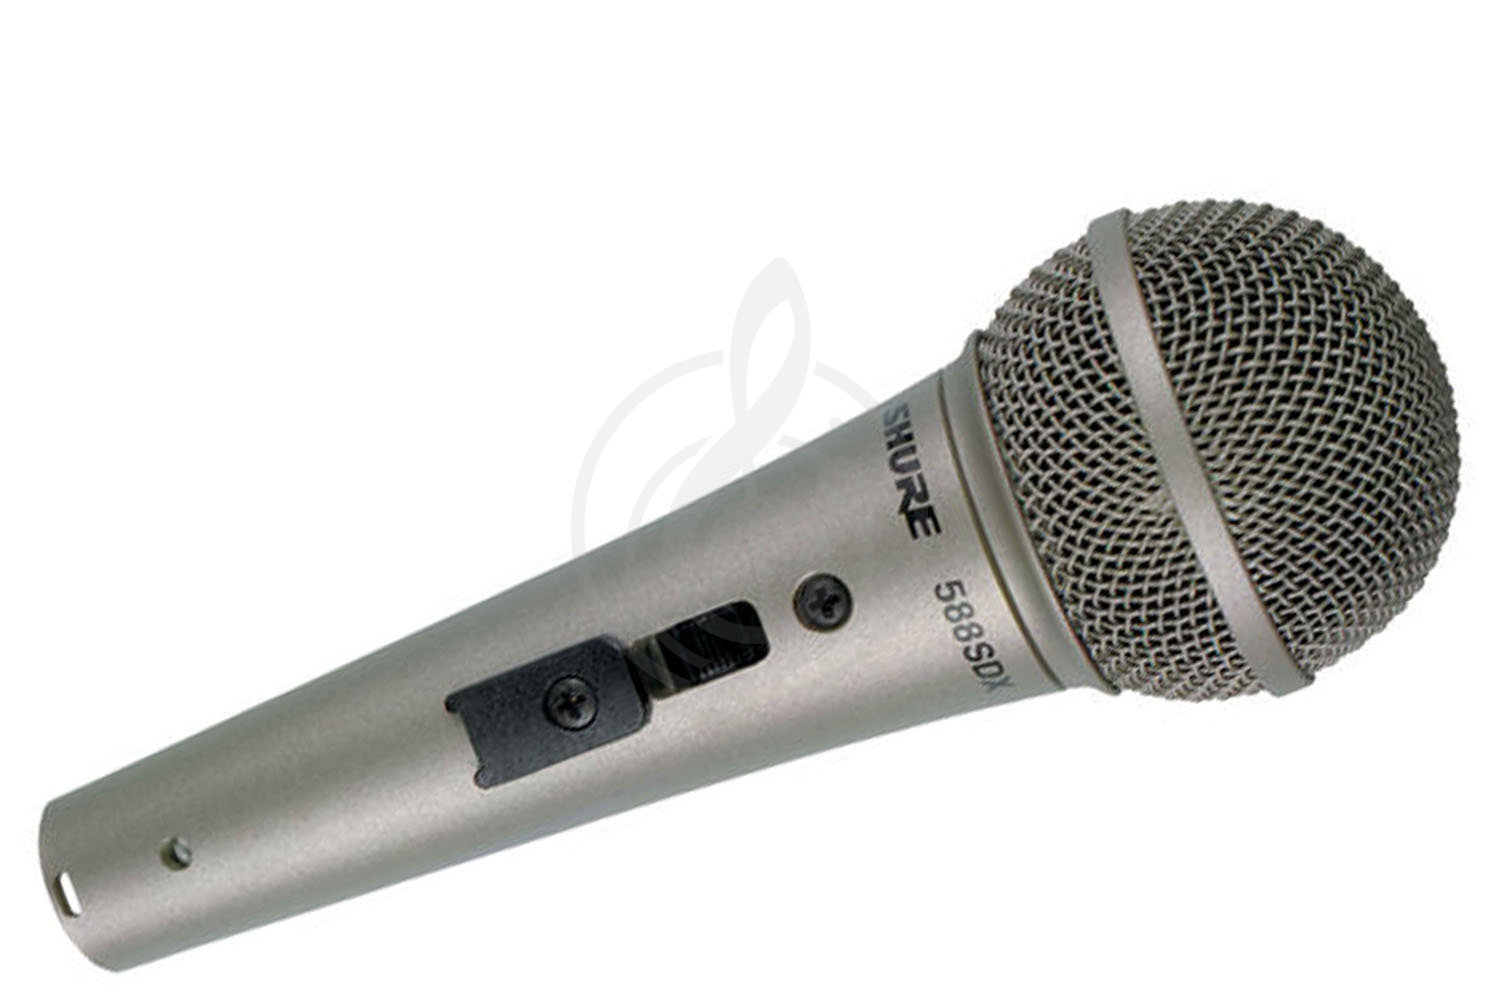 Динамический вокальный микрофон Динамические вокальные микрофоны Shure SHURE 588SDX - динамический вокальный микрофон 588SDX - фото 1